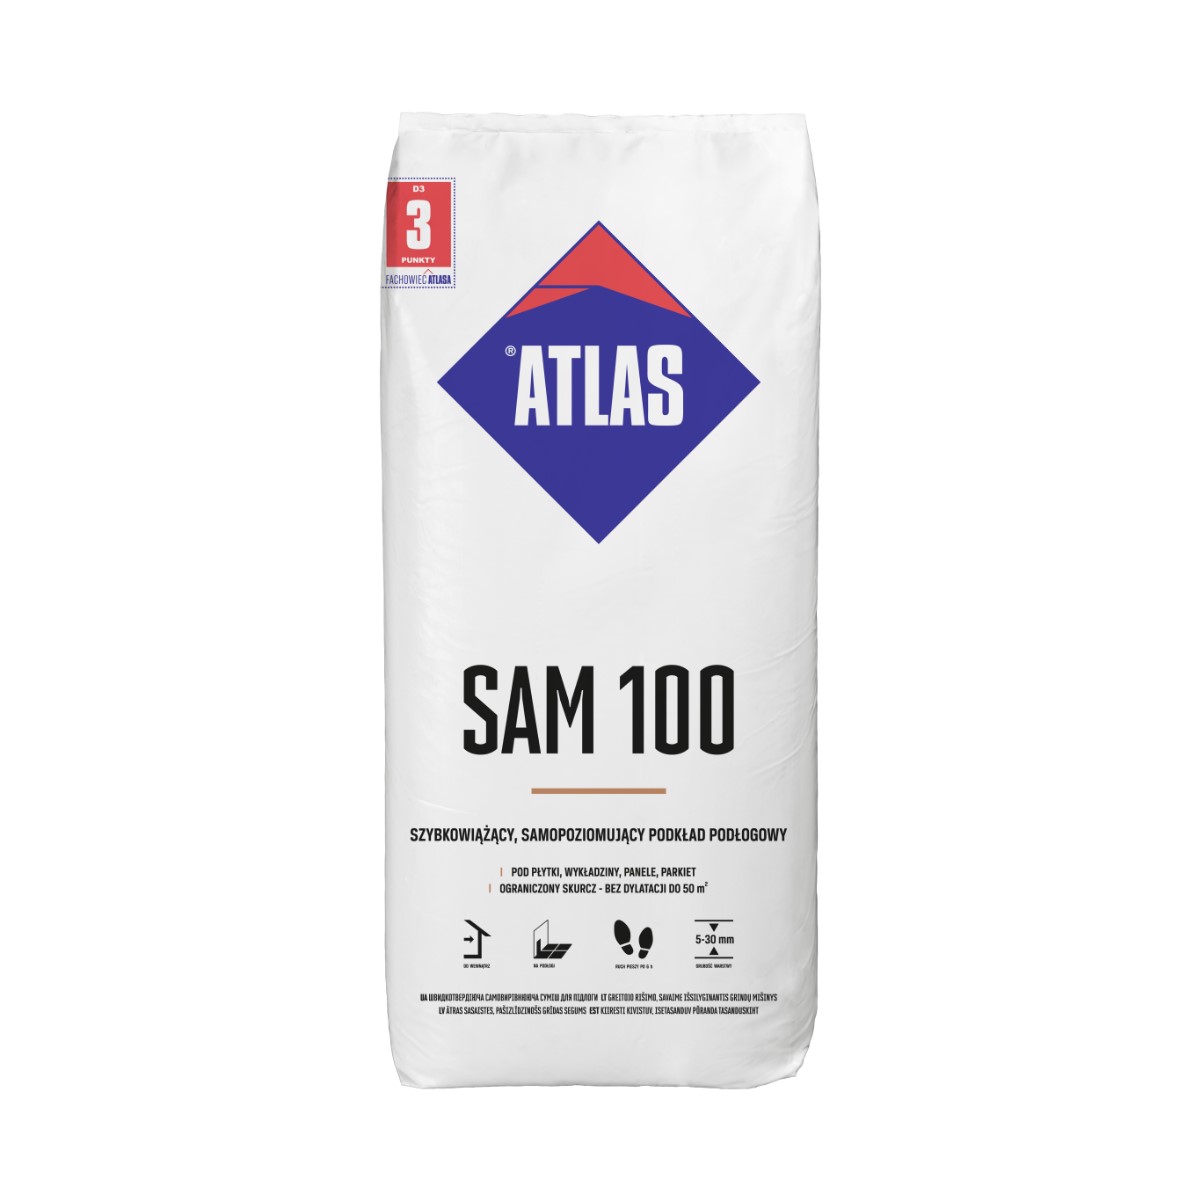 Atlas SAM 100 pašizlidzinošs zem grīdas maisījums (5-30mm), 25kg